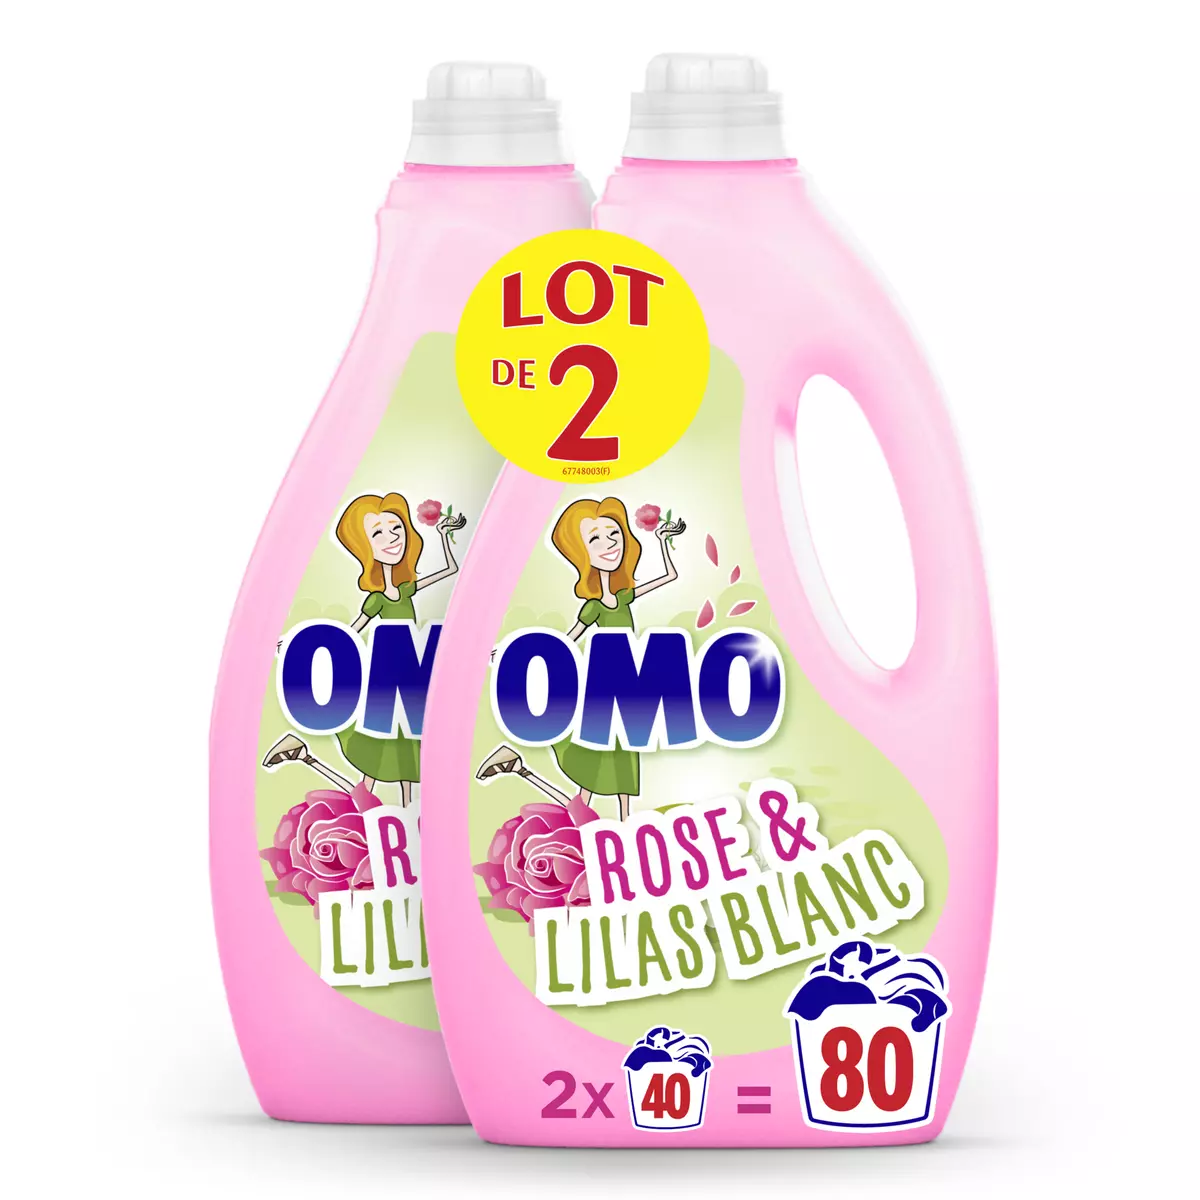 Promo Omo lessive liquide rosir de plaisir rose & lilas blanc chez Casino  Hyperfrais